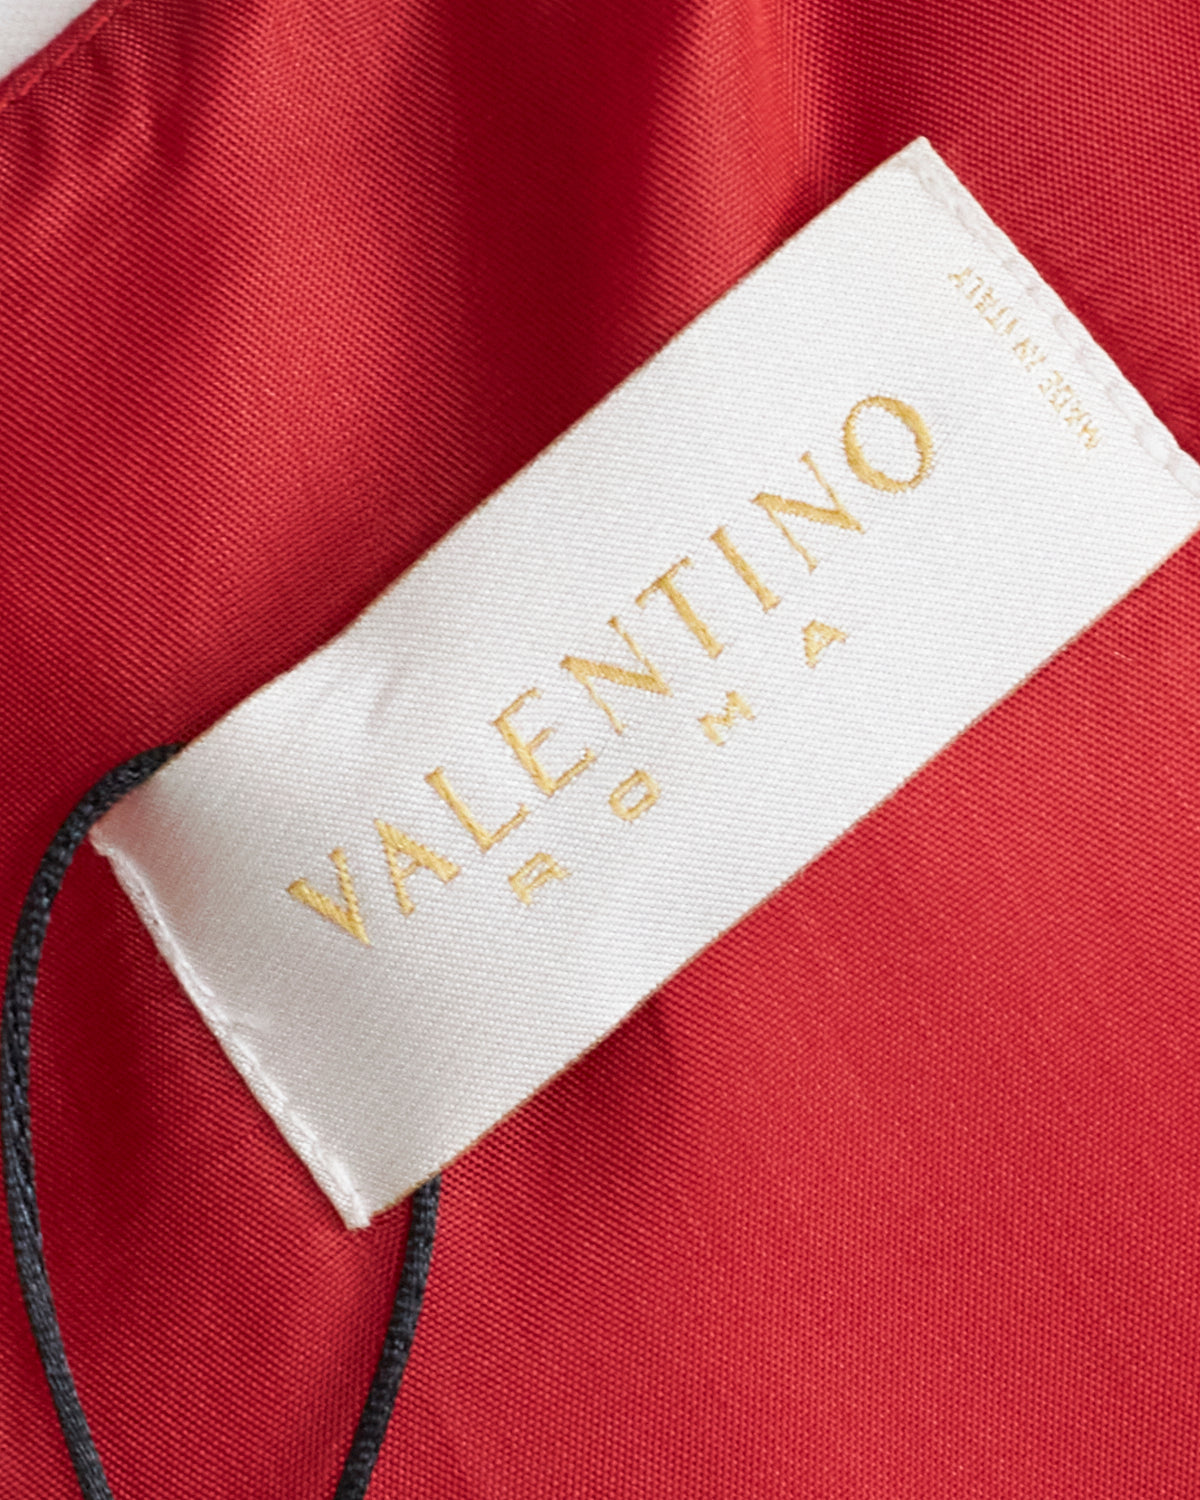 Robe rouge Valentino avec détails métallisés 